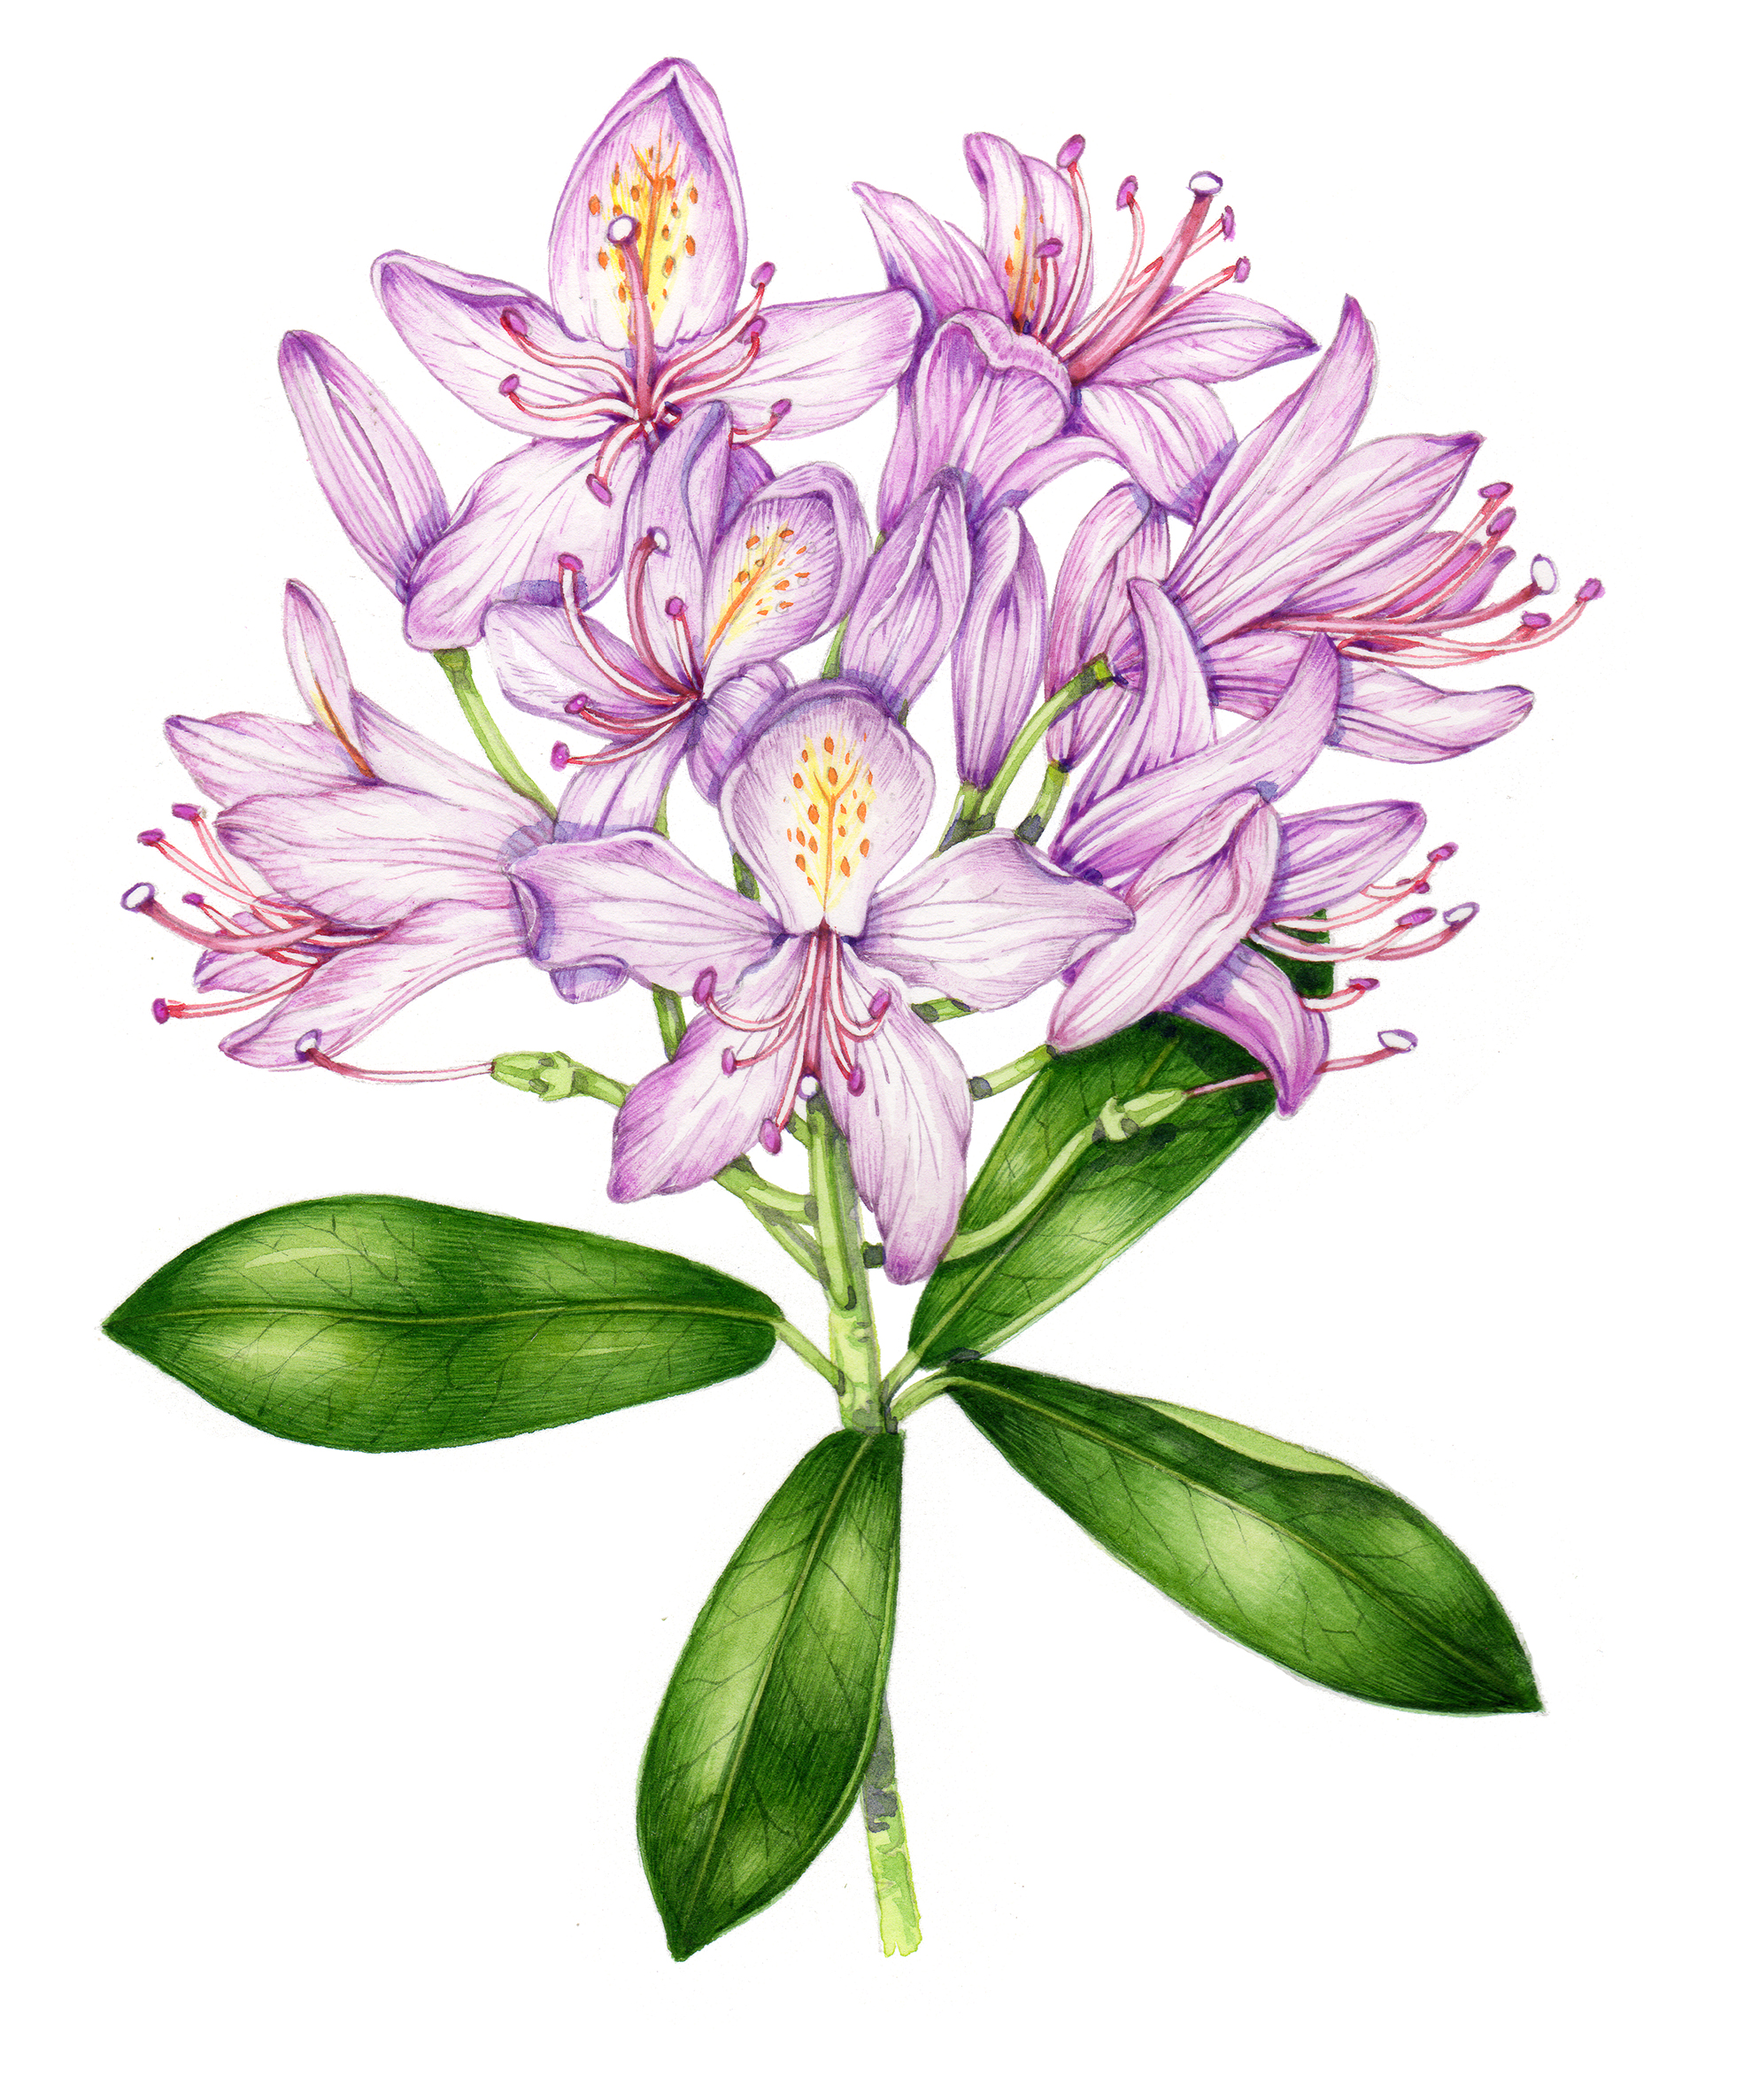 Rhododendron ponticum botanical illustration by Lizzie Harper Lizzie